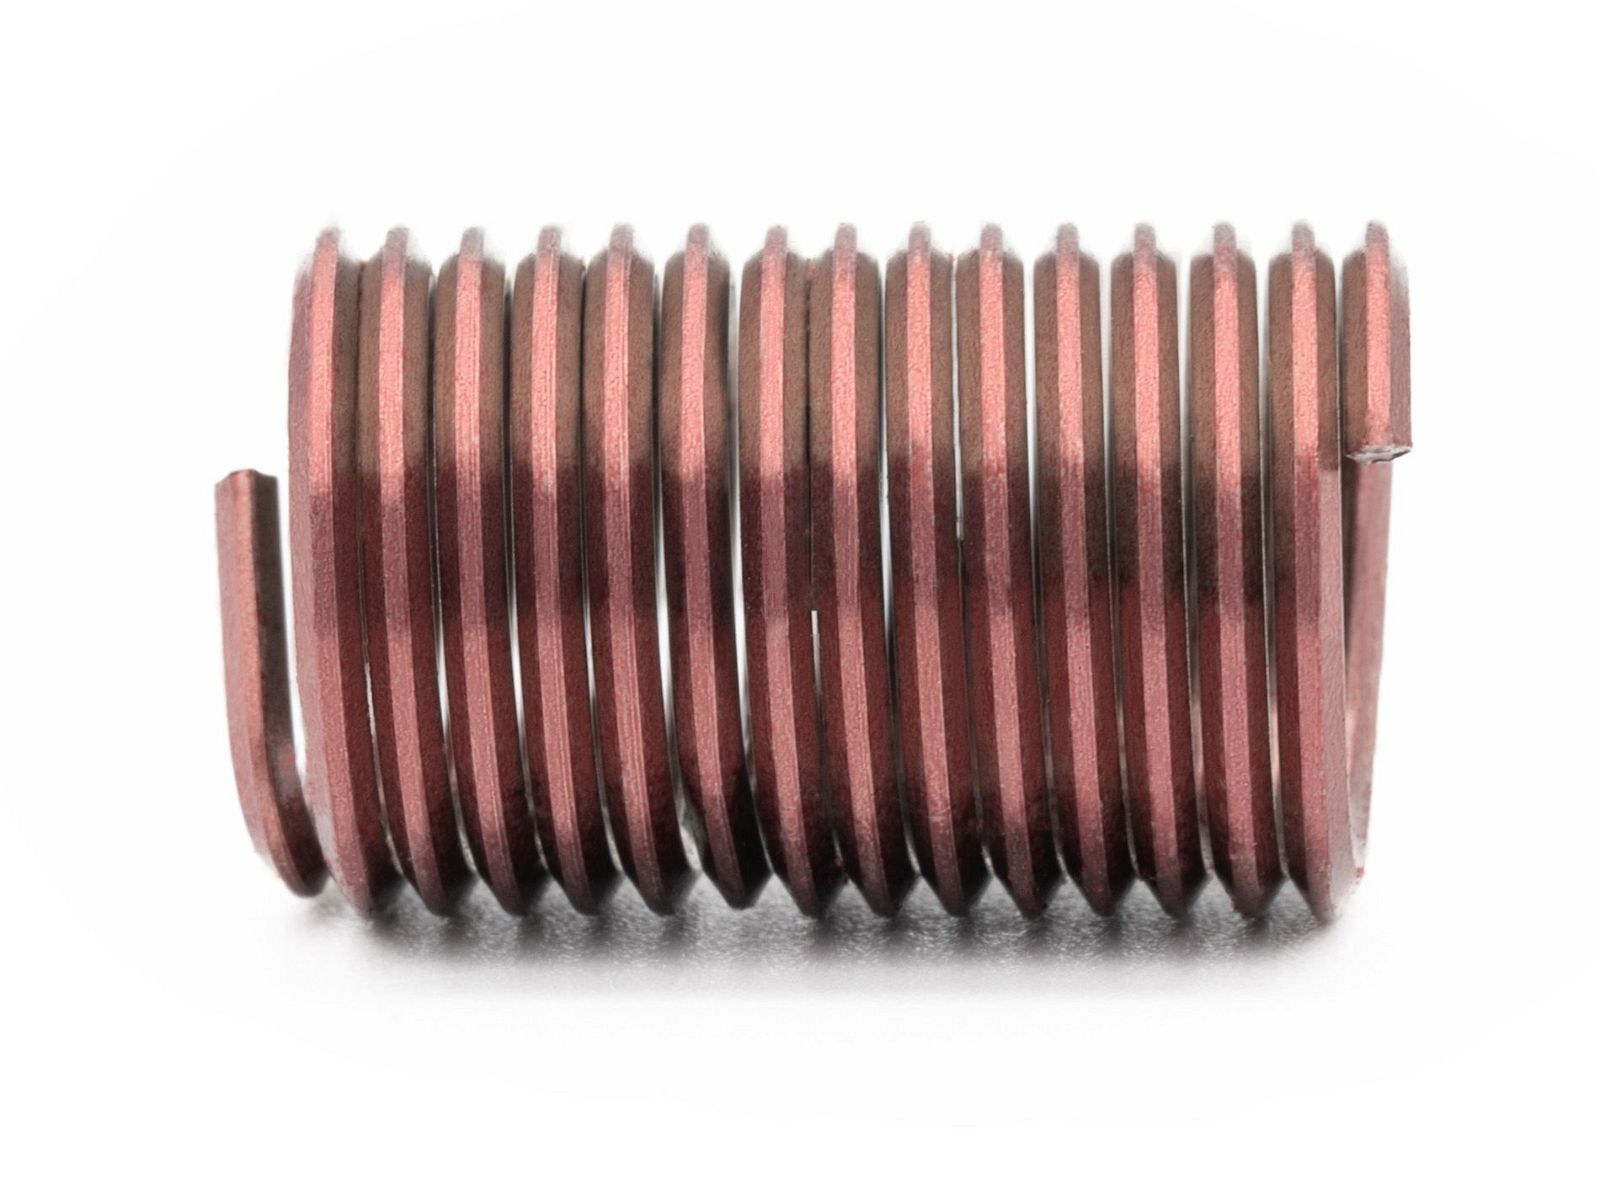 BaerCoil Drahtgewindeeinsätze UNC 1/4 x 20 - 2,5 D (15,88 mm) - screw grip (schraubensichernd) - 100 Stück